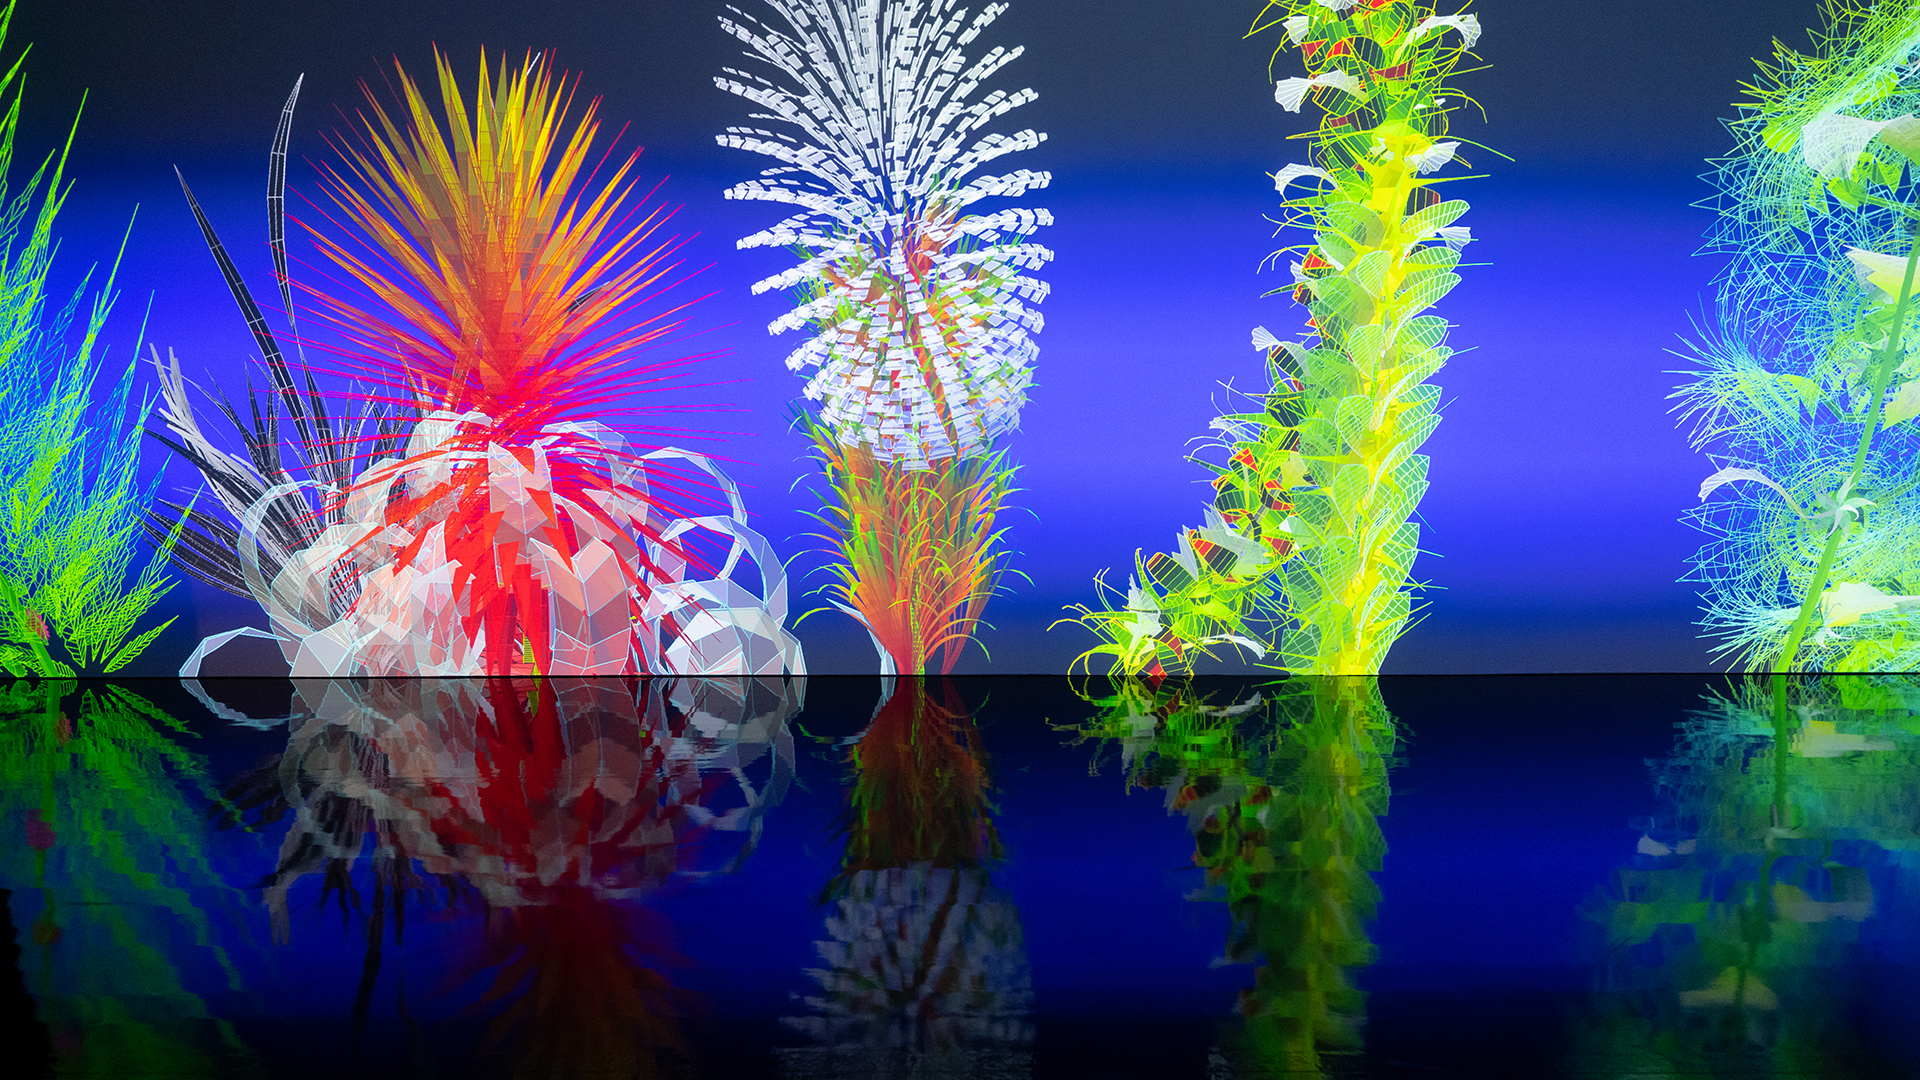 Die interaktive Installation von Miguel Chevalier zeigt bunte Blumen. | dpa